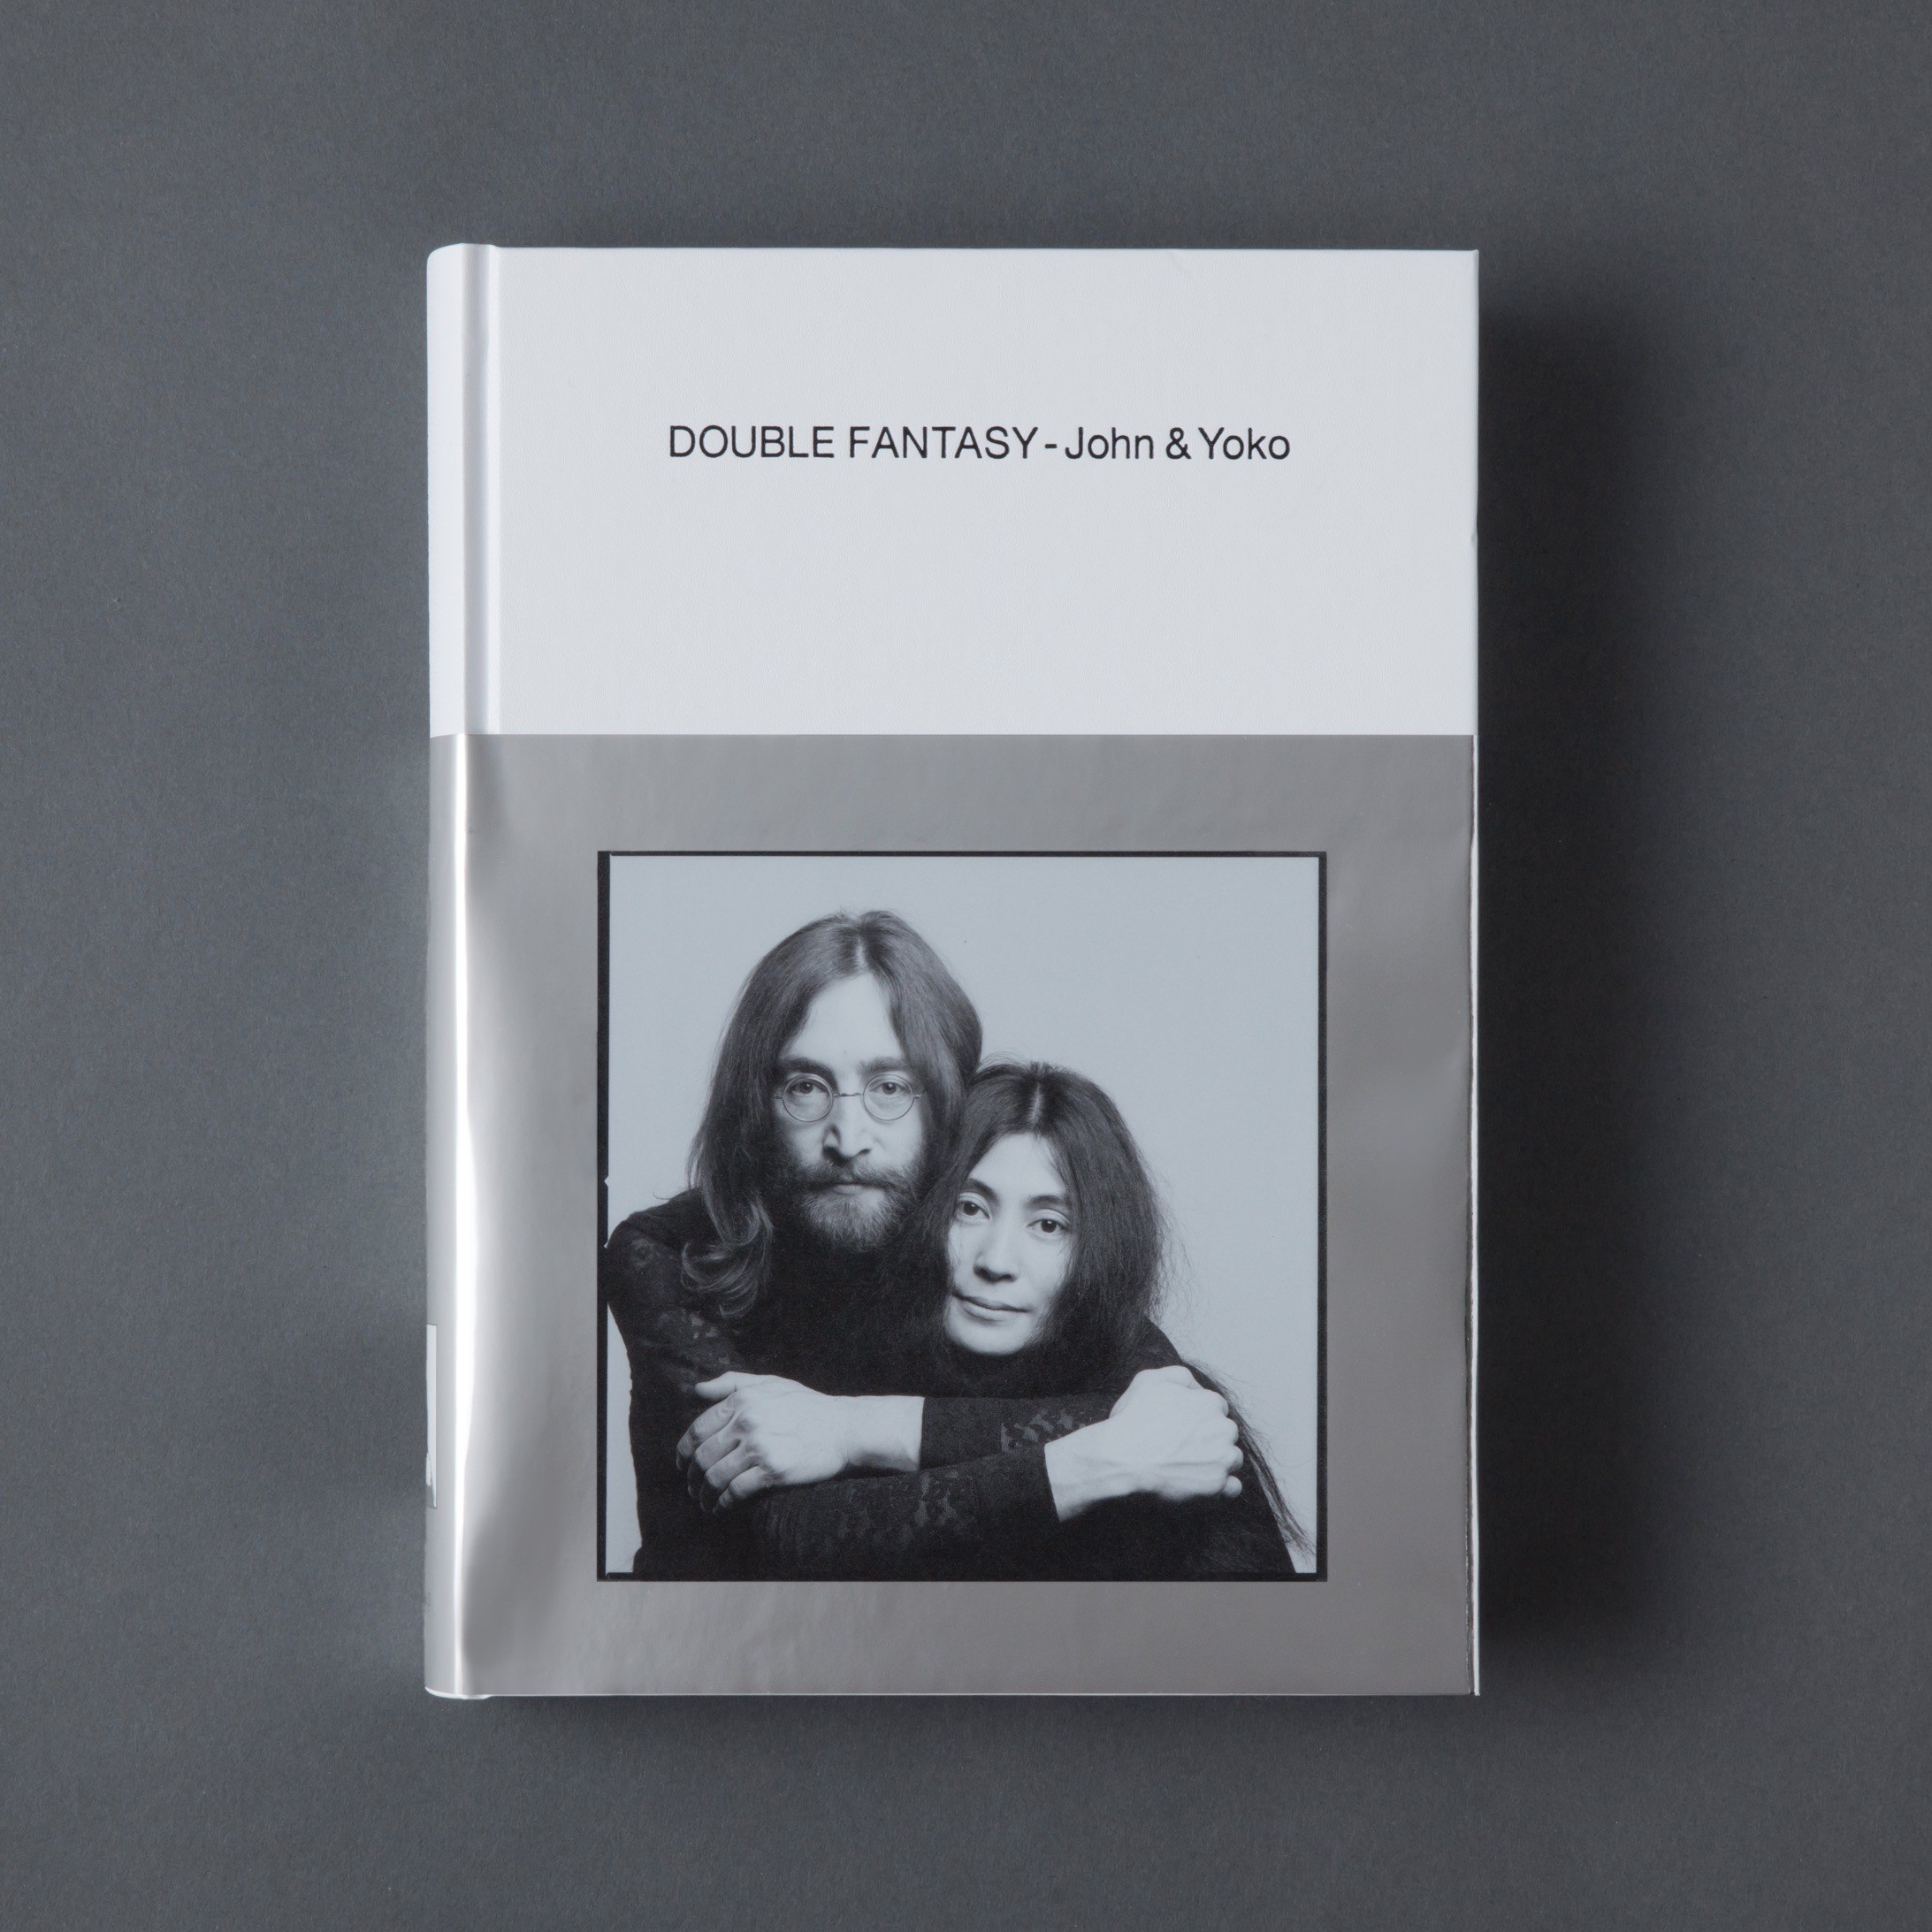 DOUBLE FANTASY - John & Yokoの商品画像